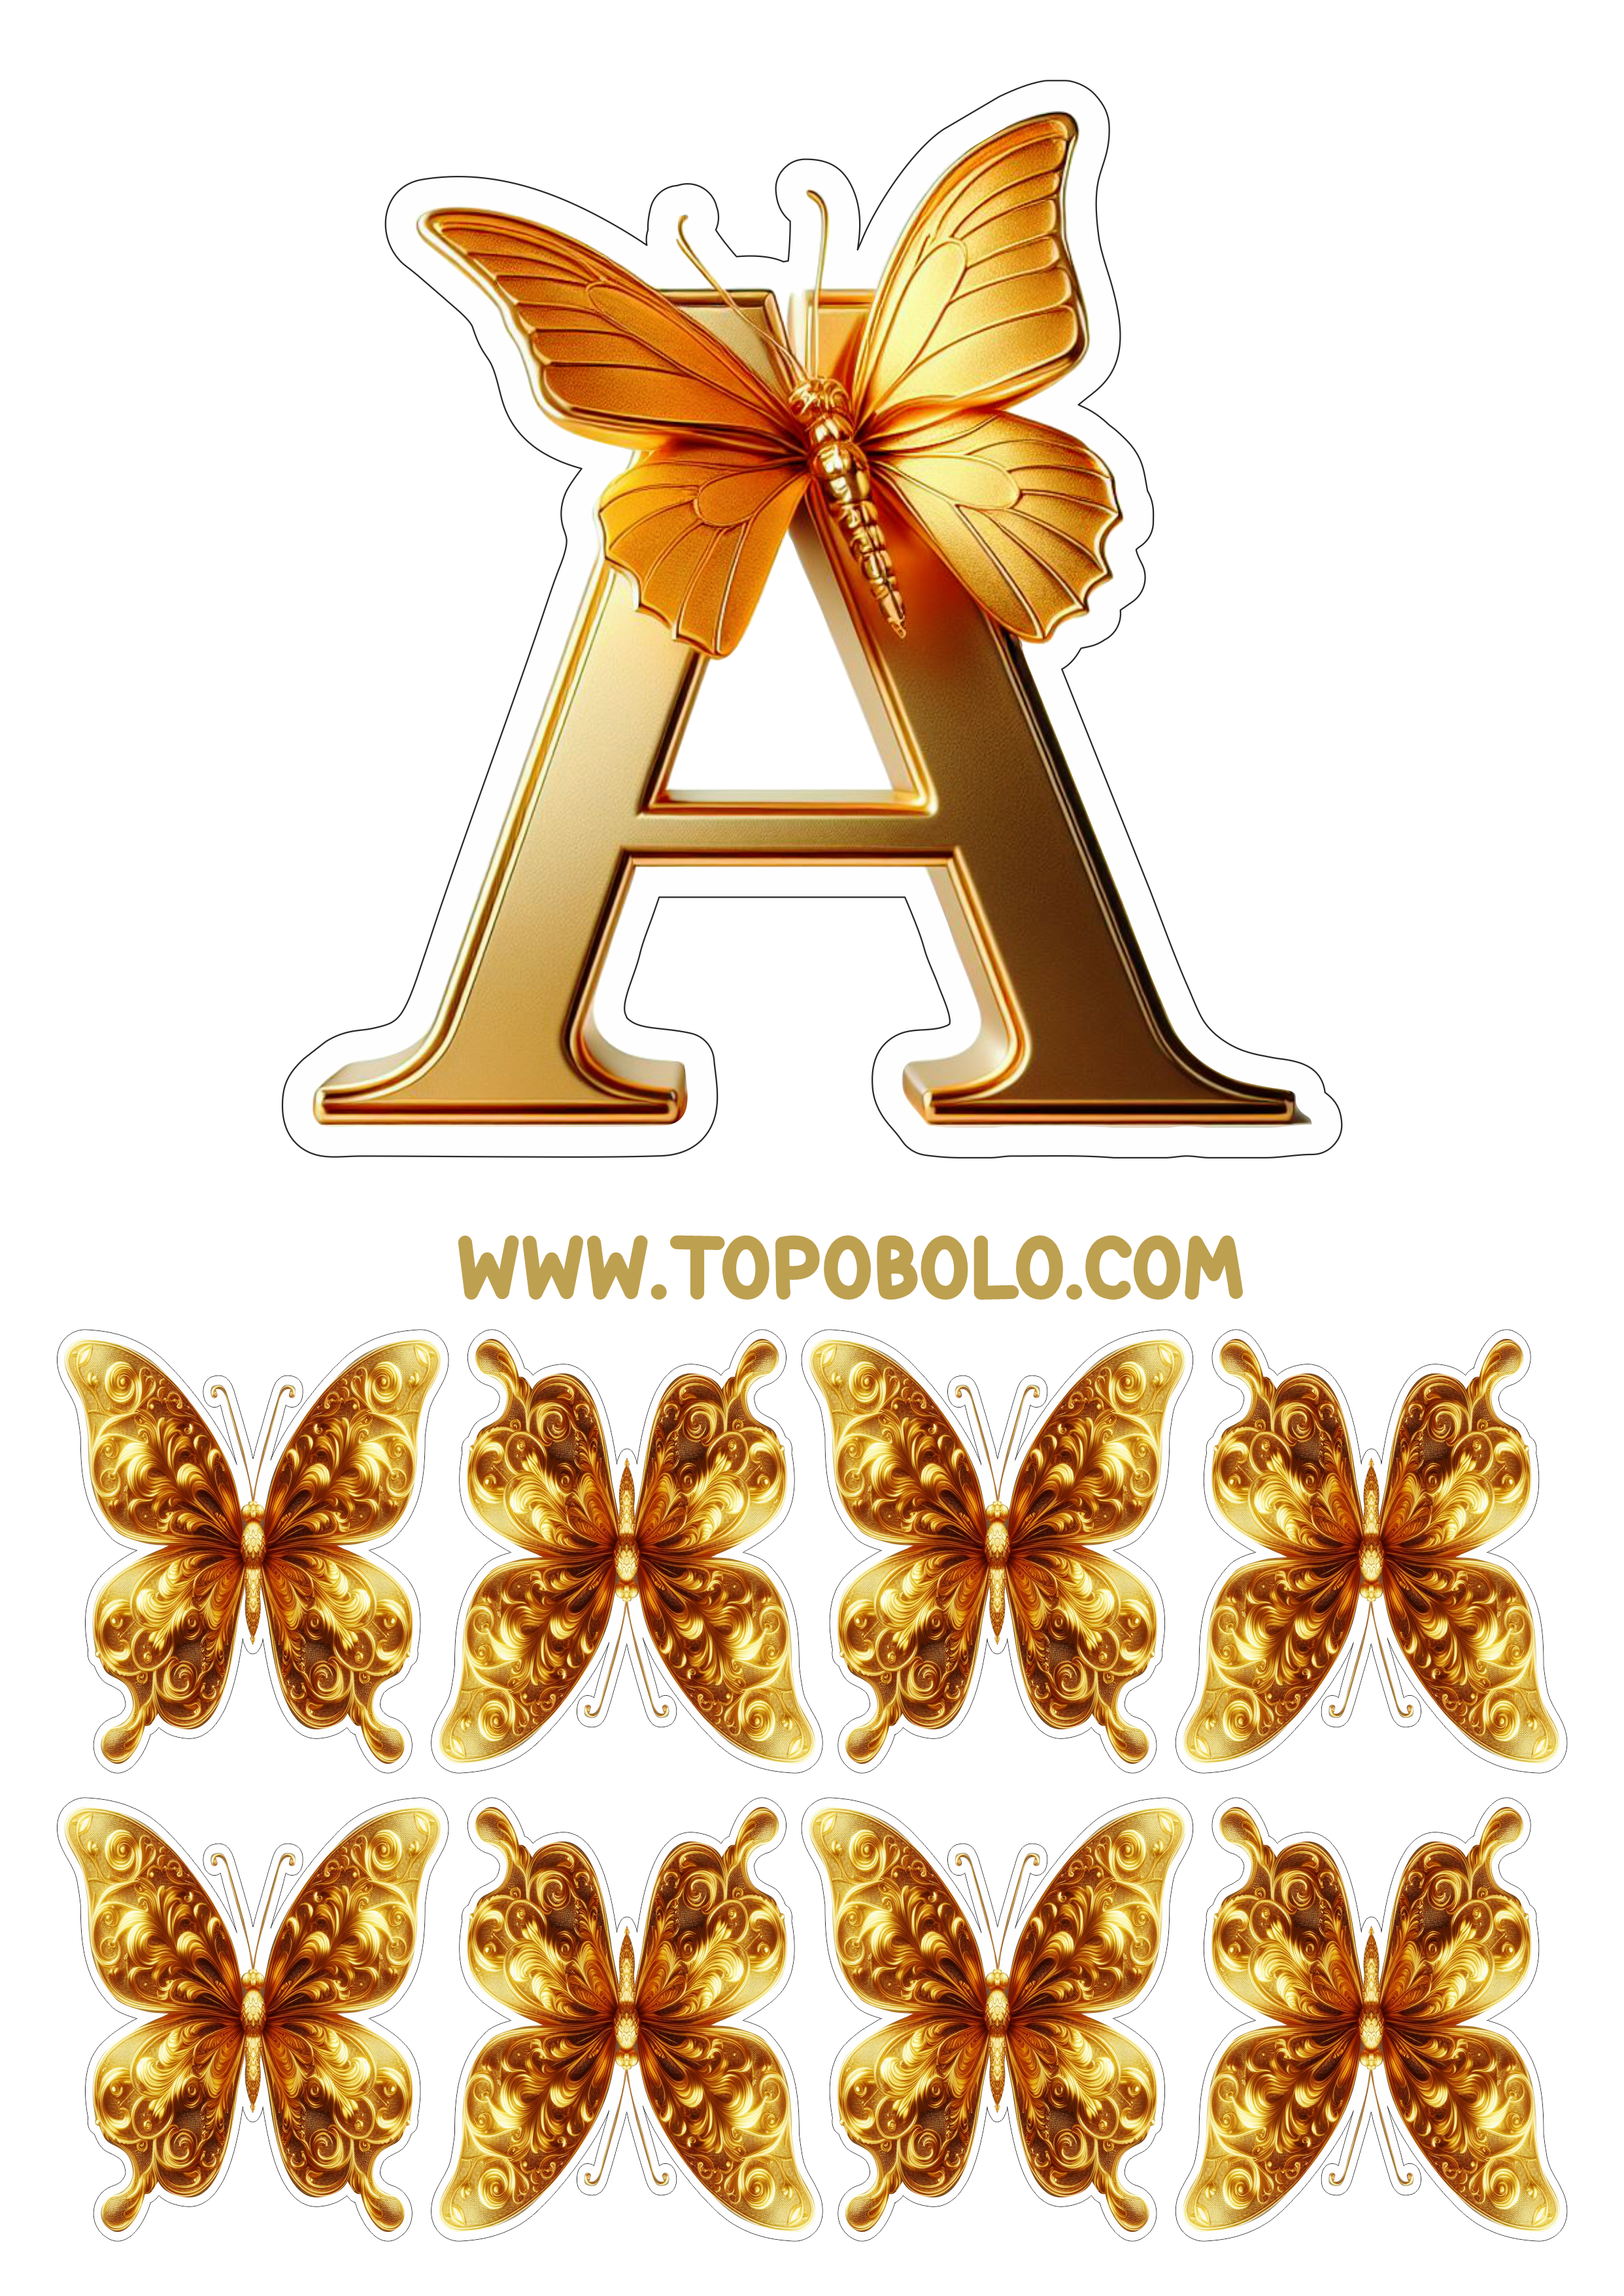 Topo de bolo letras douradas com borboletas aniversário personalizado para imprimir png